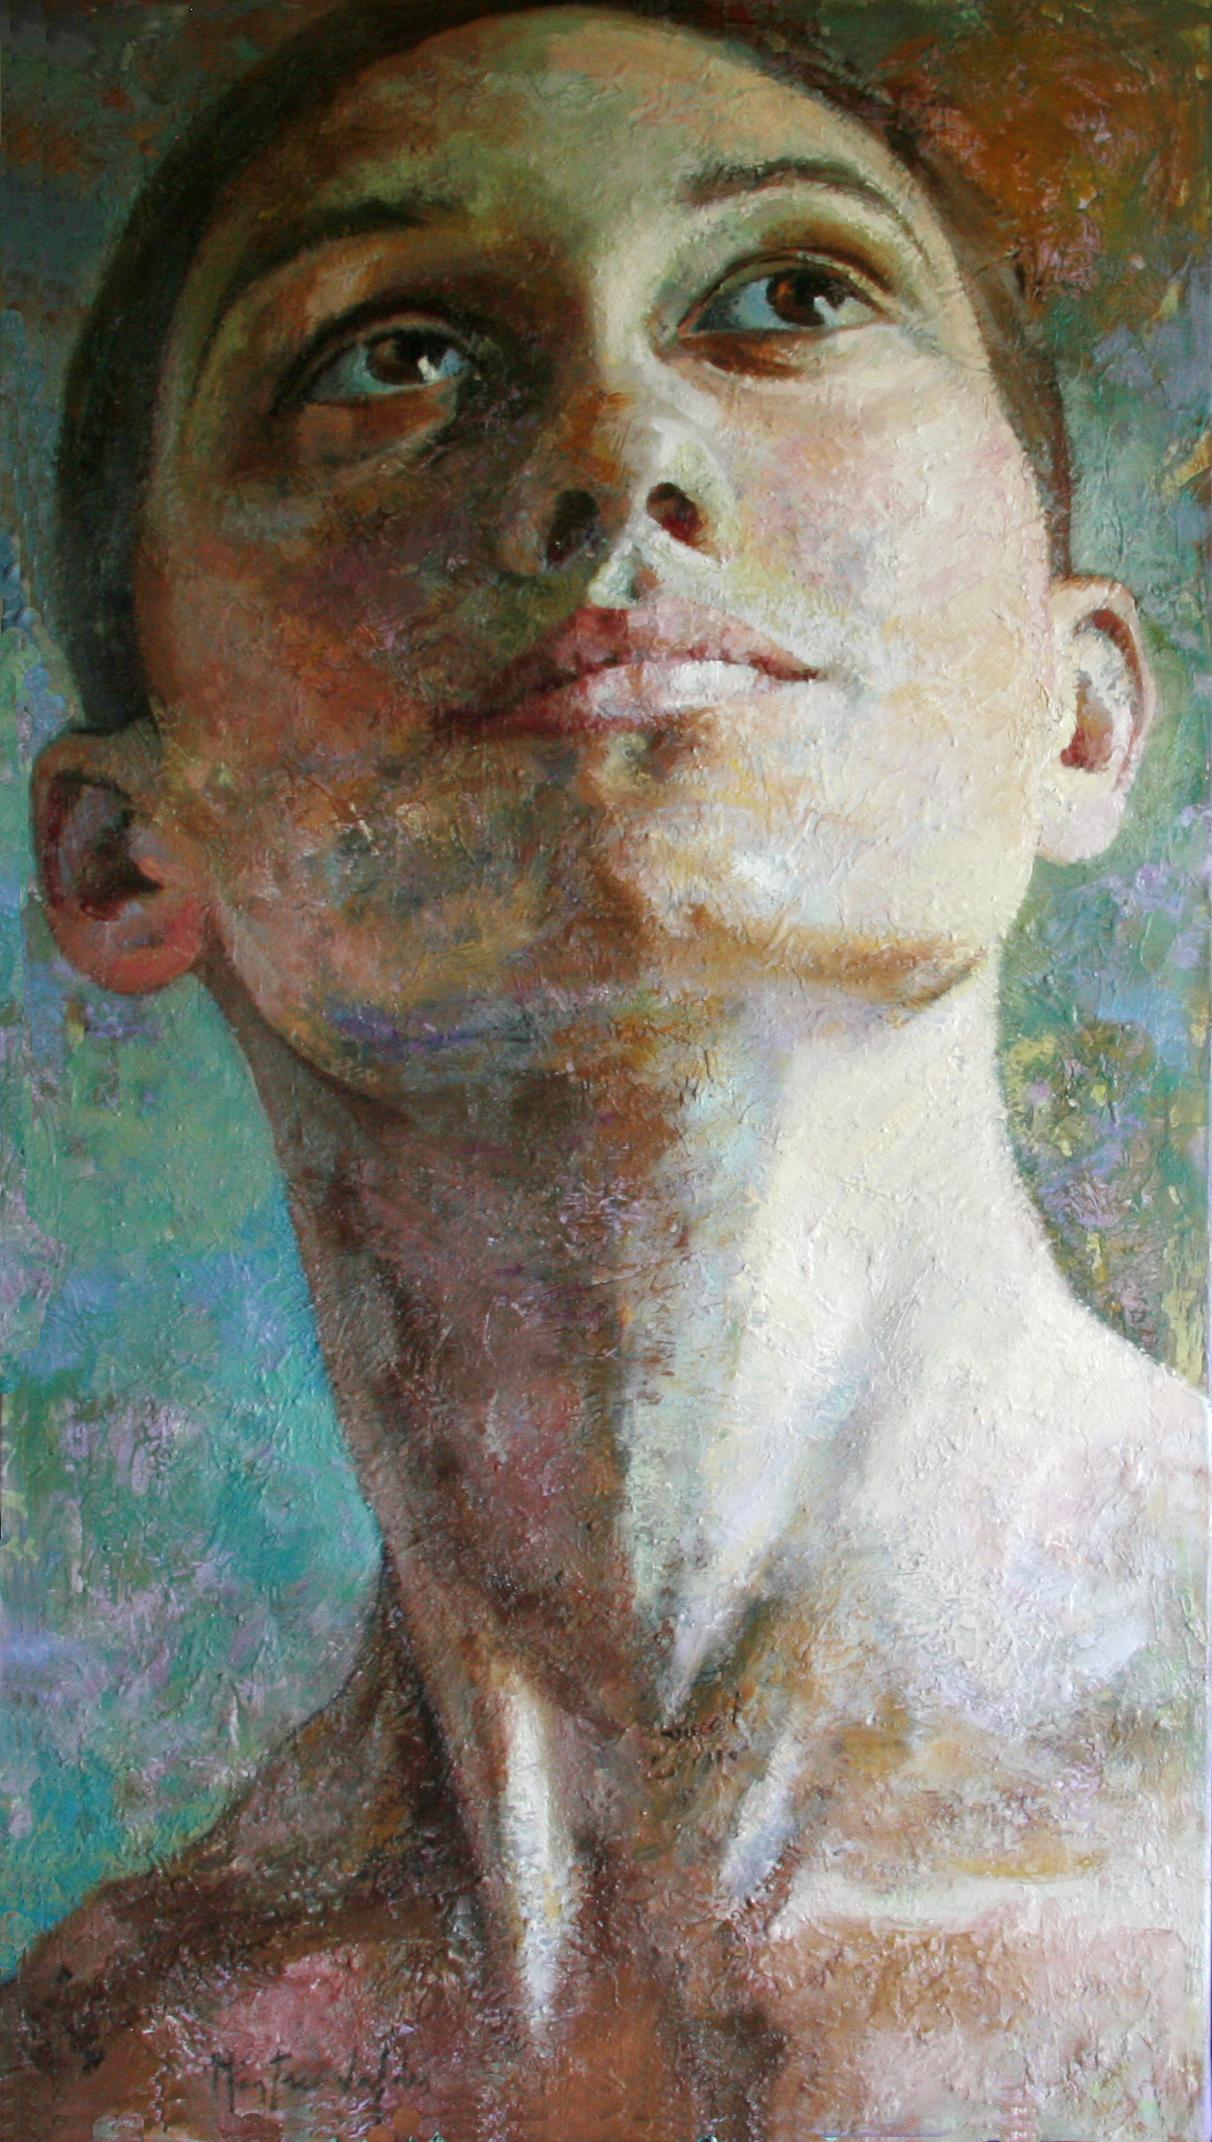 Montse Valdés Figurative Painting - 12-9-11 - 21st Century, Contemporary, Portrait Painting, Oil on Canvas